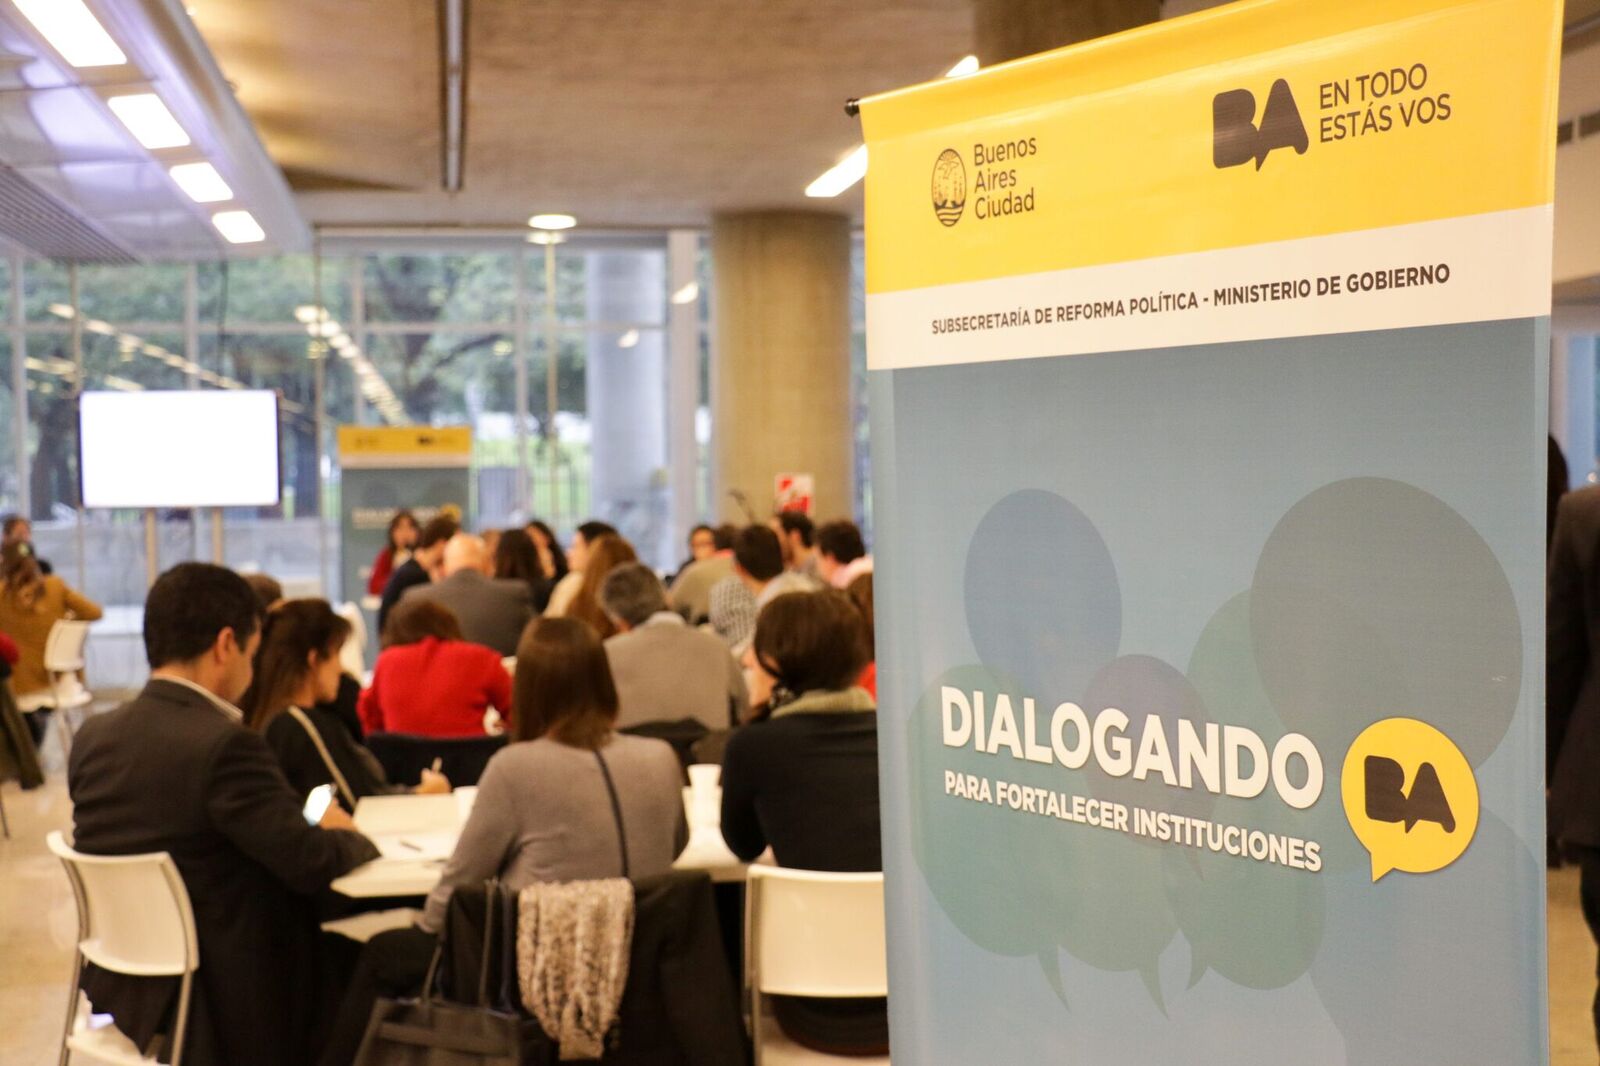 Dialogando BA, para fortalecer instituciones